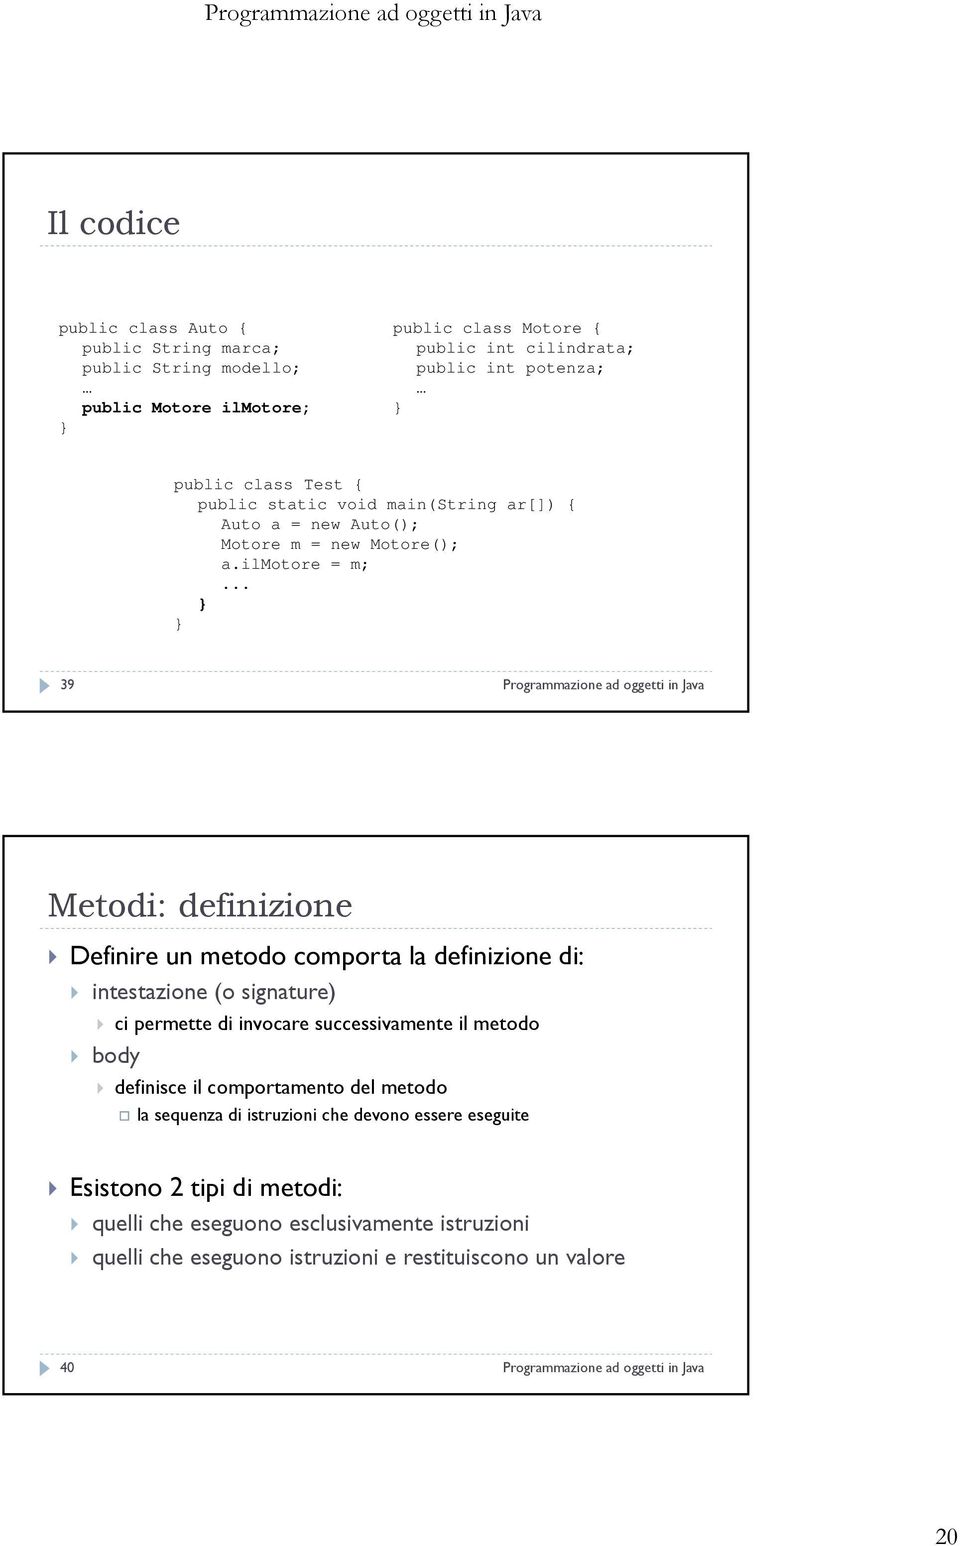 .. 39 Programmazione ad oggetti in Java Metodi: definizione Definire un metodo comporta la definizione di: intestazione (o signature) ci permette di invocare successivamente il metodo